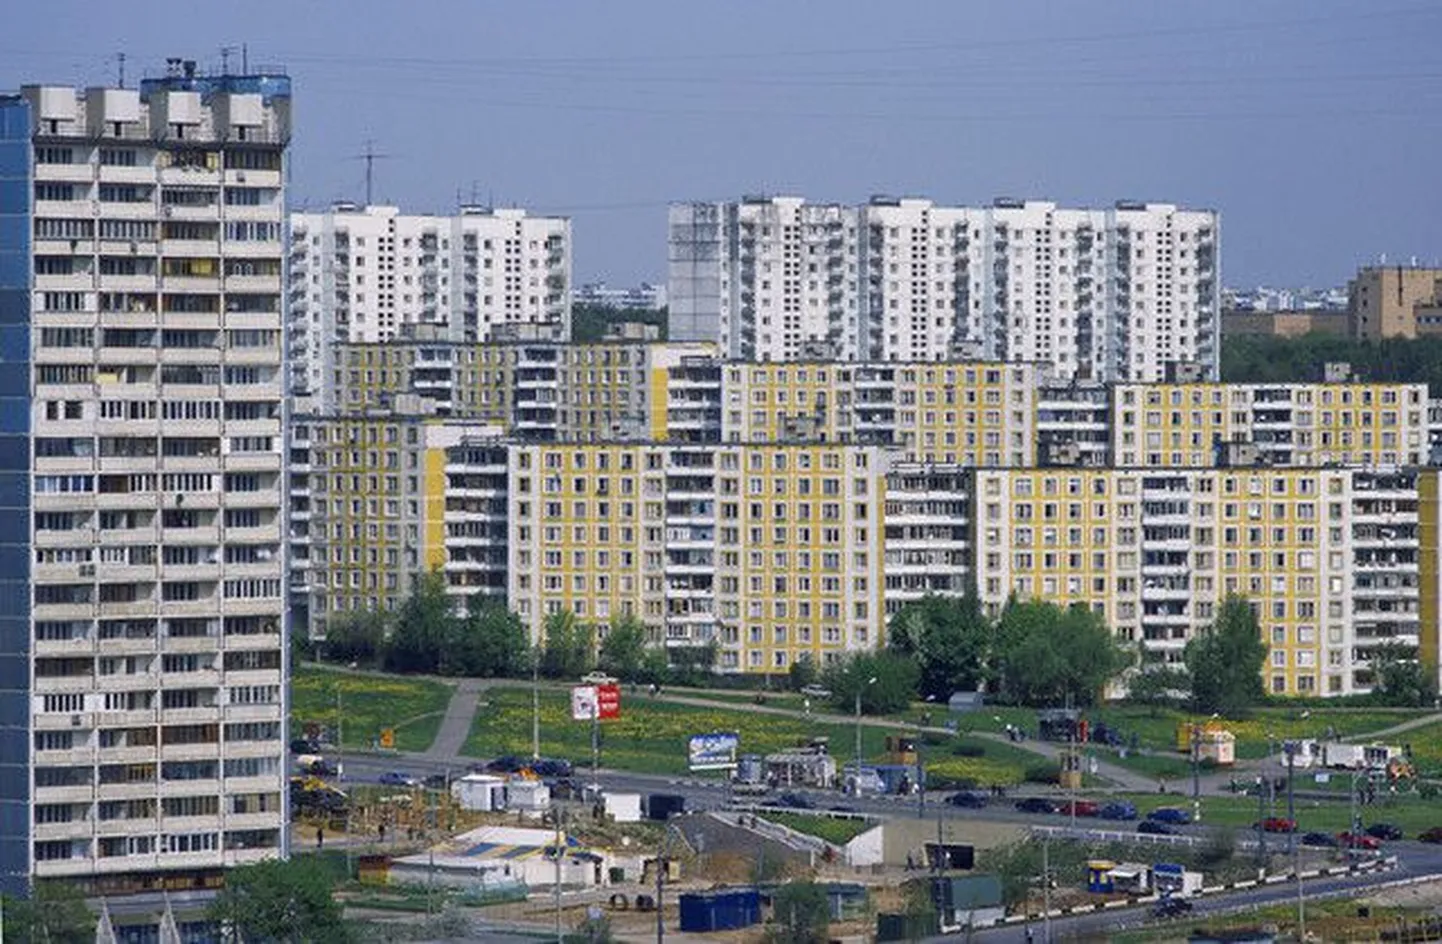 Pildil on üks paljudest Moskva elurajoonidest, mis ehitati 80-ndatel aastatel.